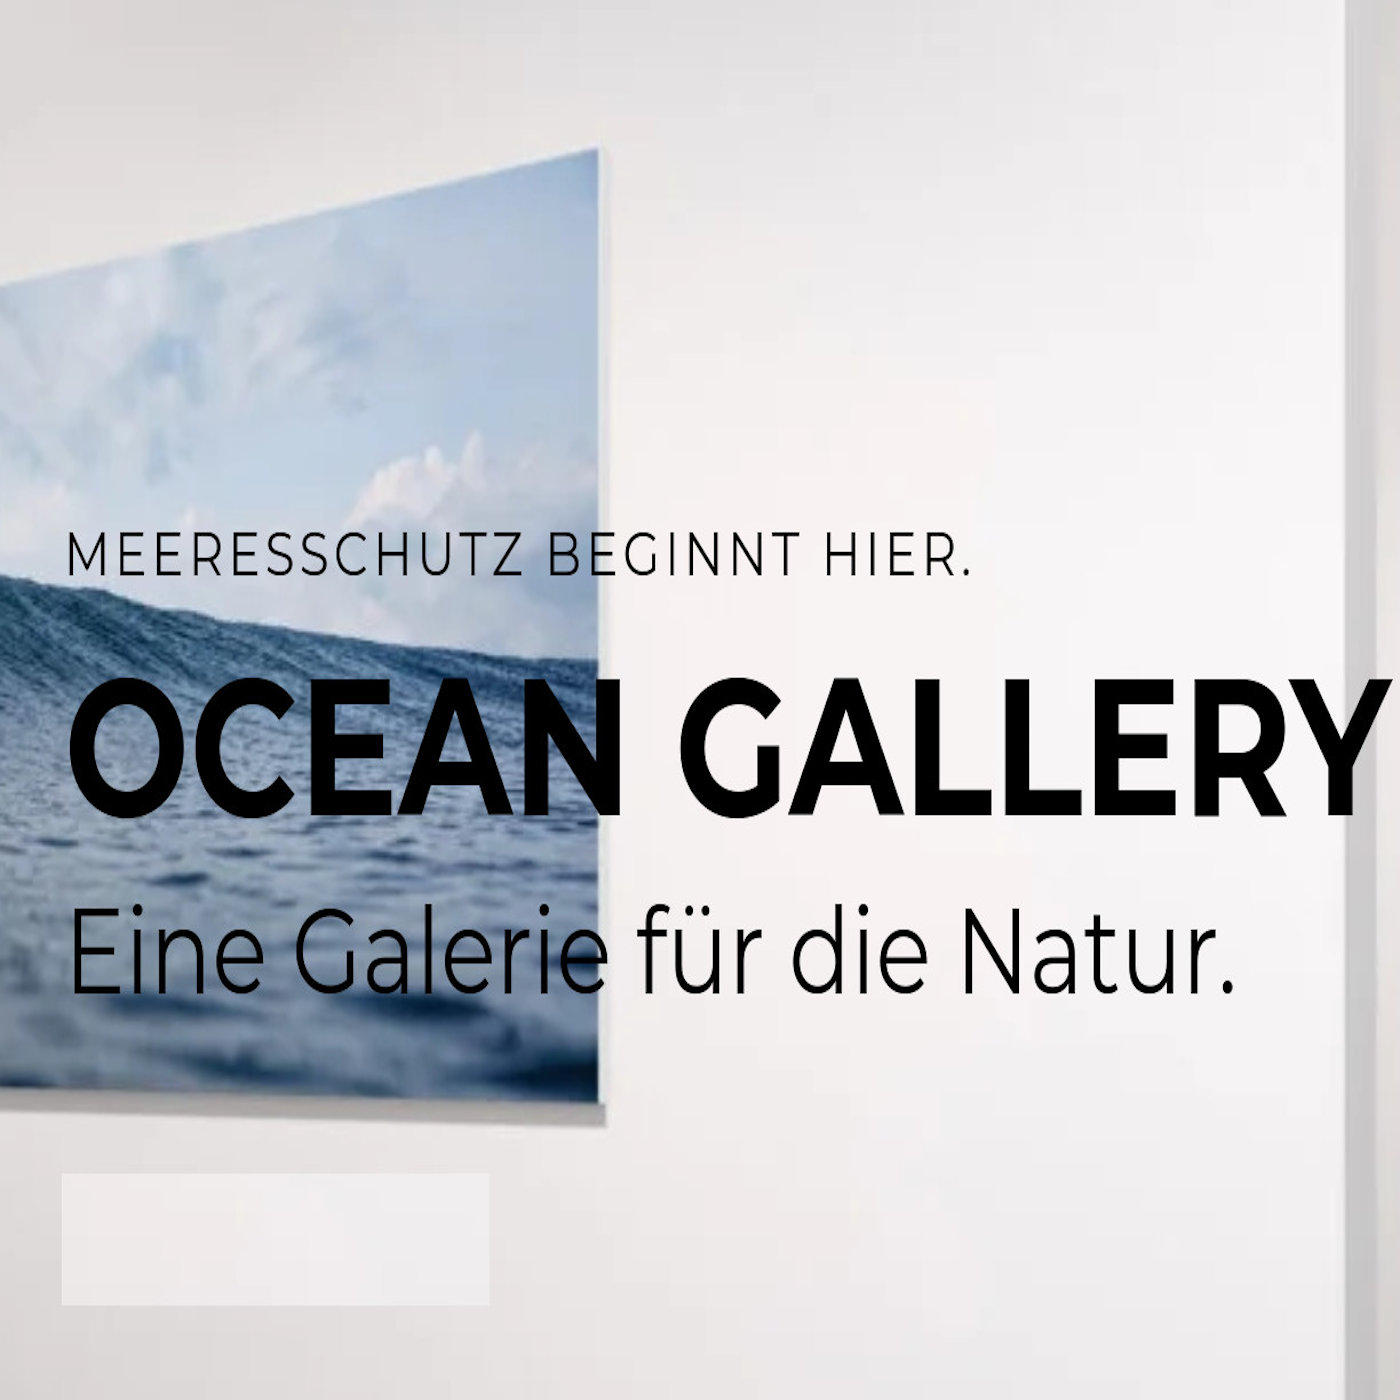 Pop-Up Ocean Gallery - Interview mit Meeresfotografin Julia Ochs